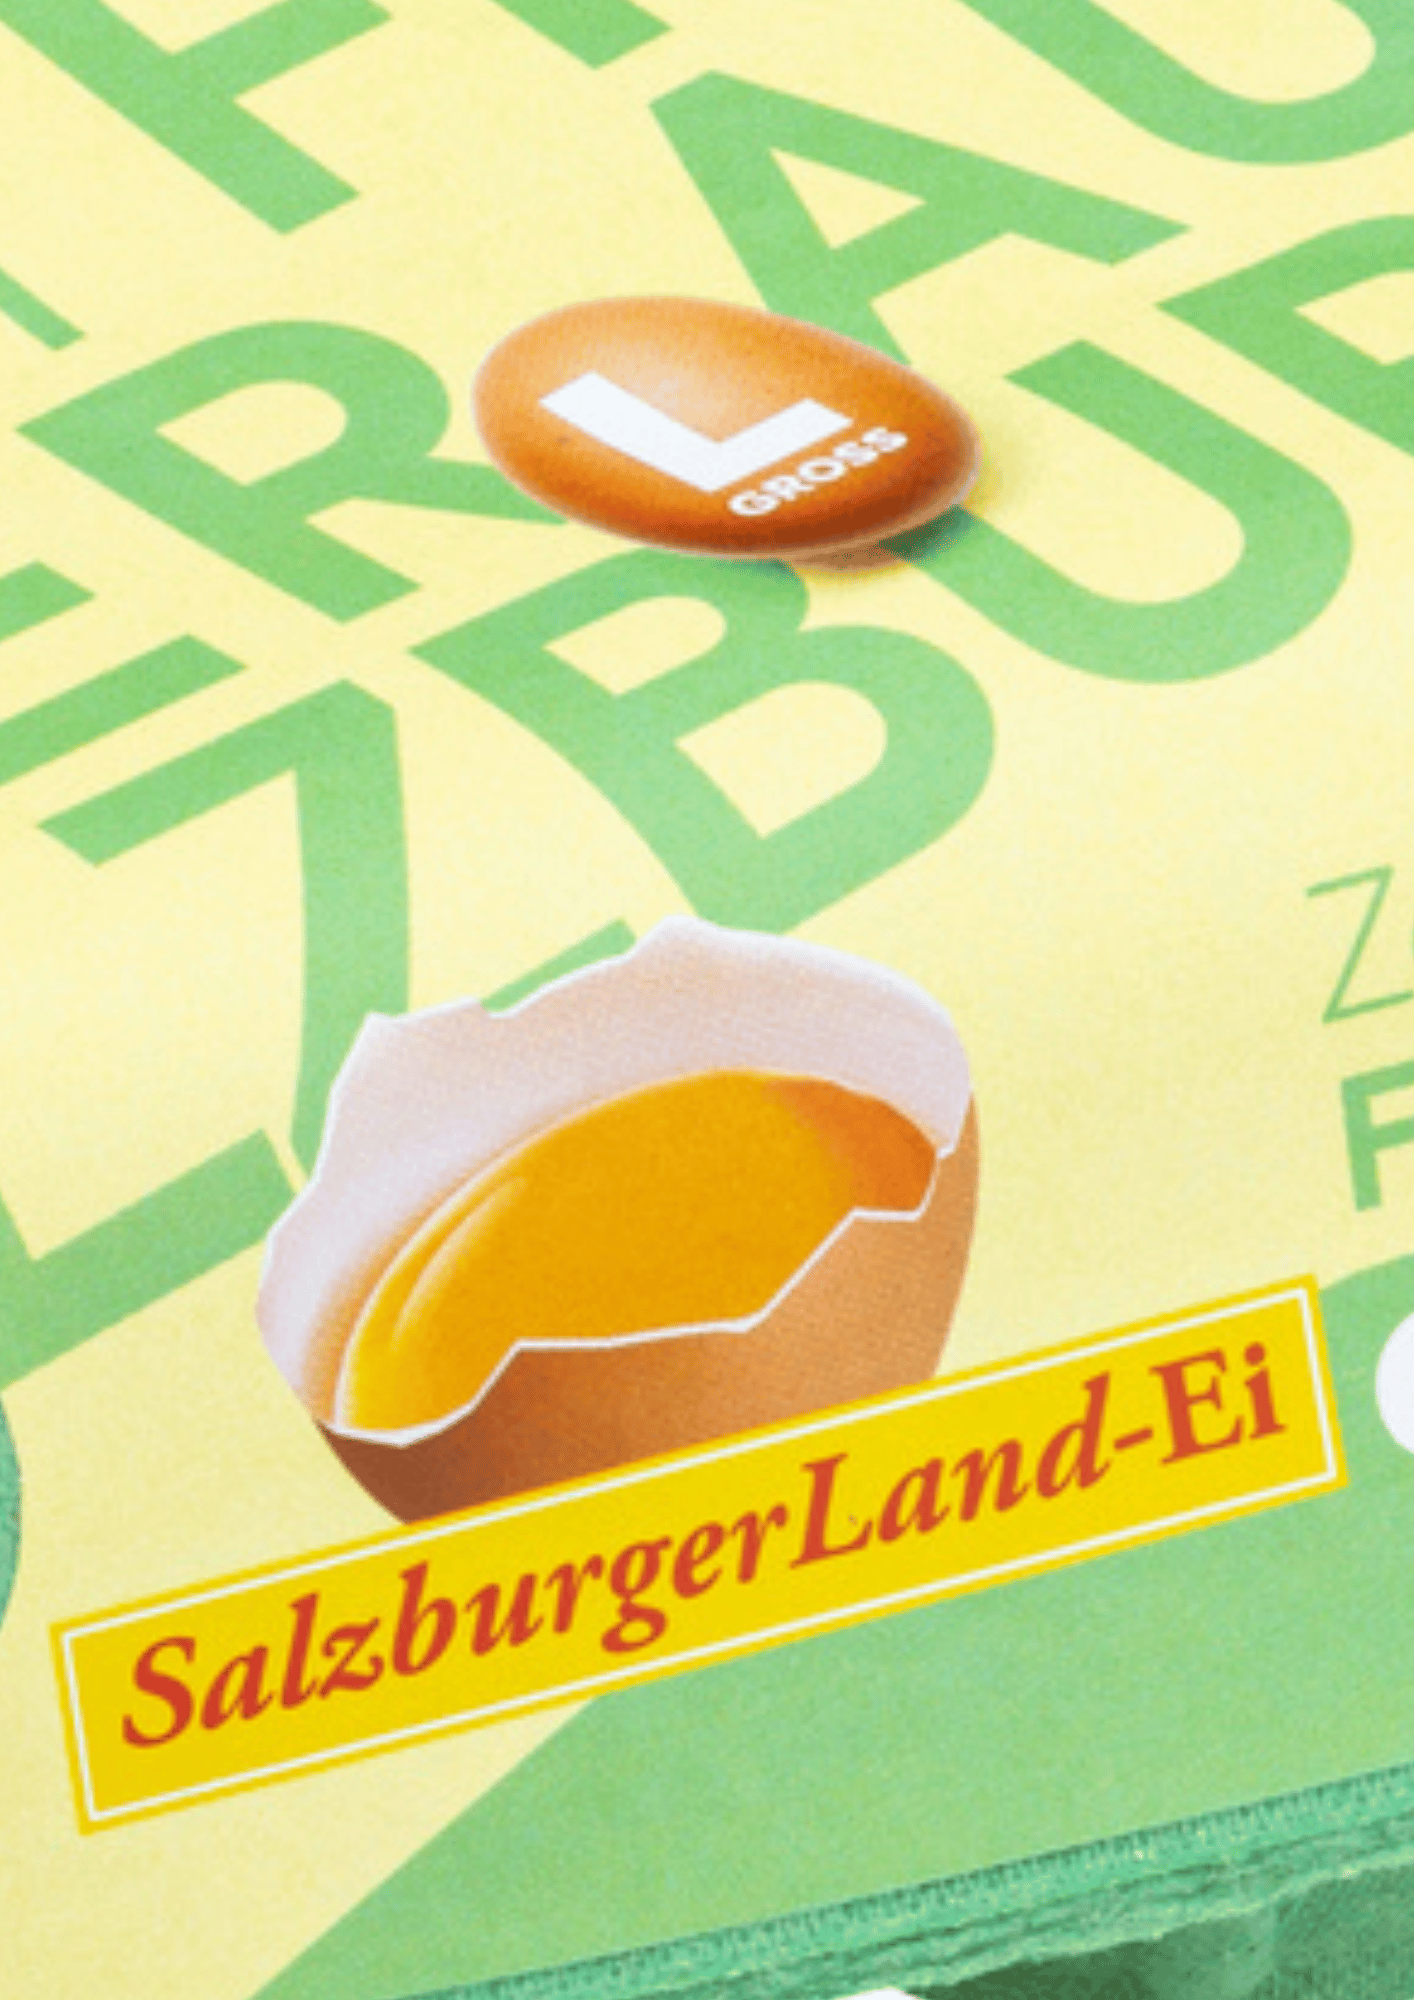 Huberbauer - SalzburgerLand Ei bei Salzburg schmeckt